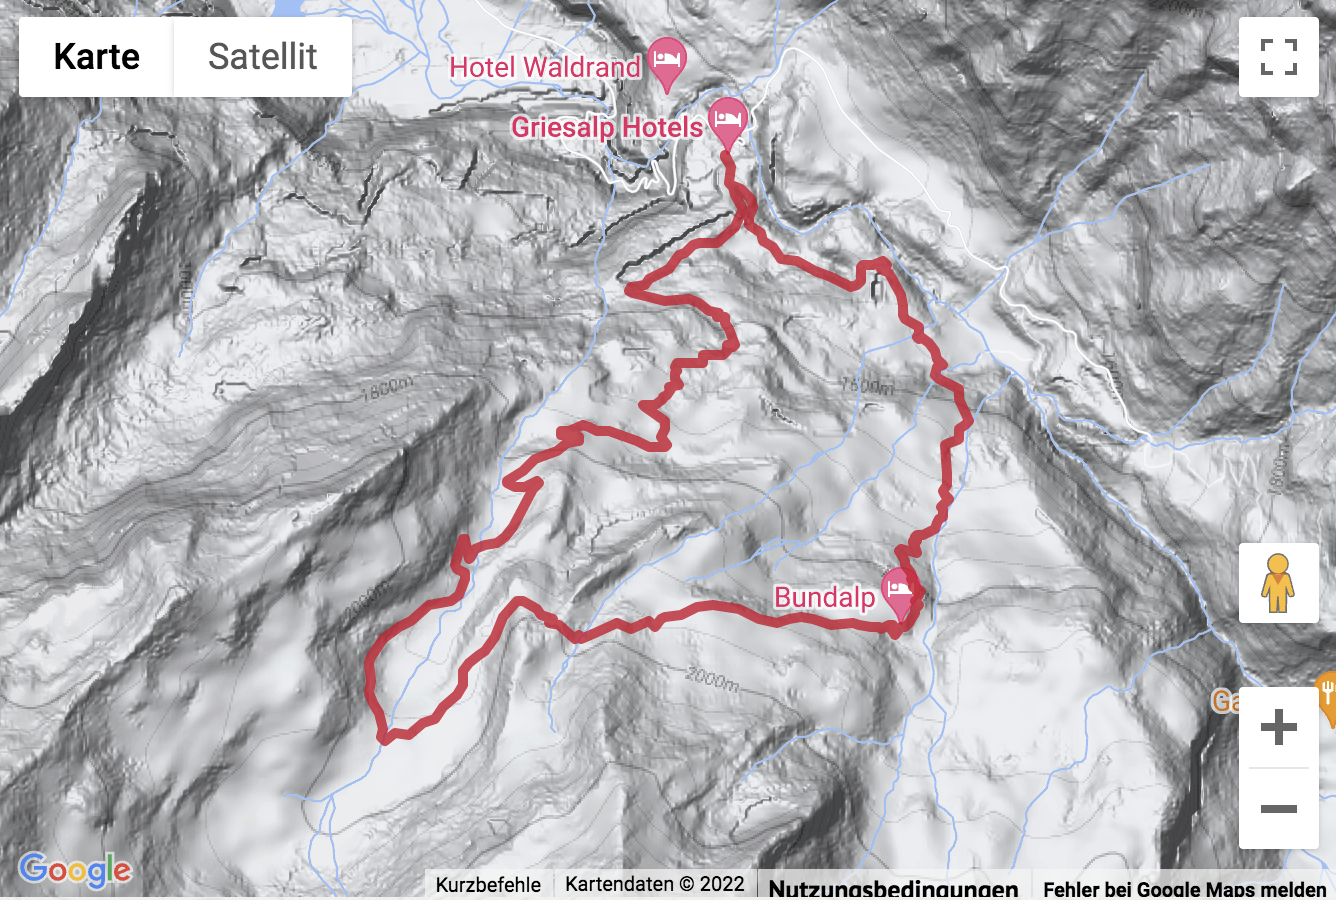 Übersichts-Routenkarte für die Bergwanderung von der Griesalp zur Bundalp